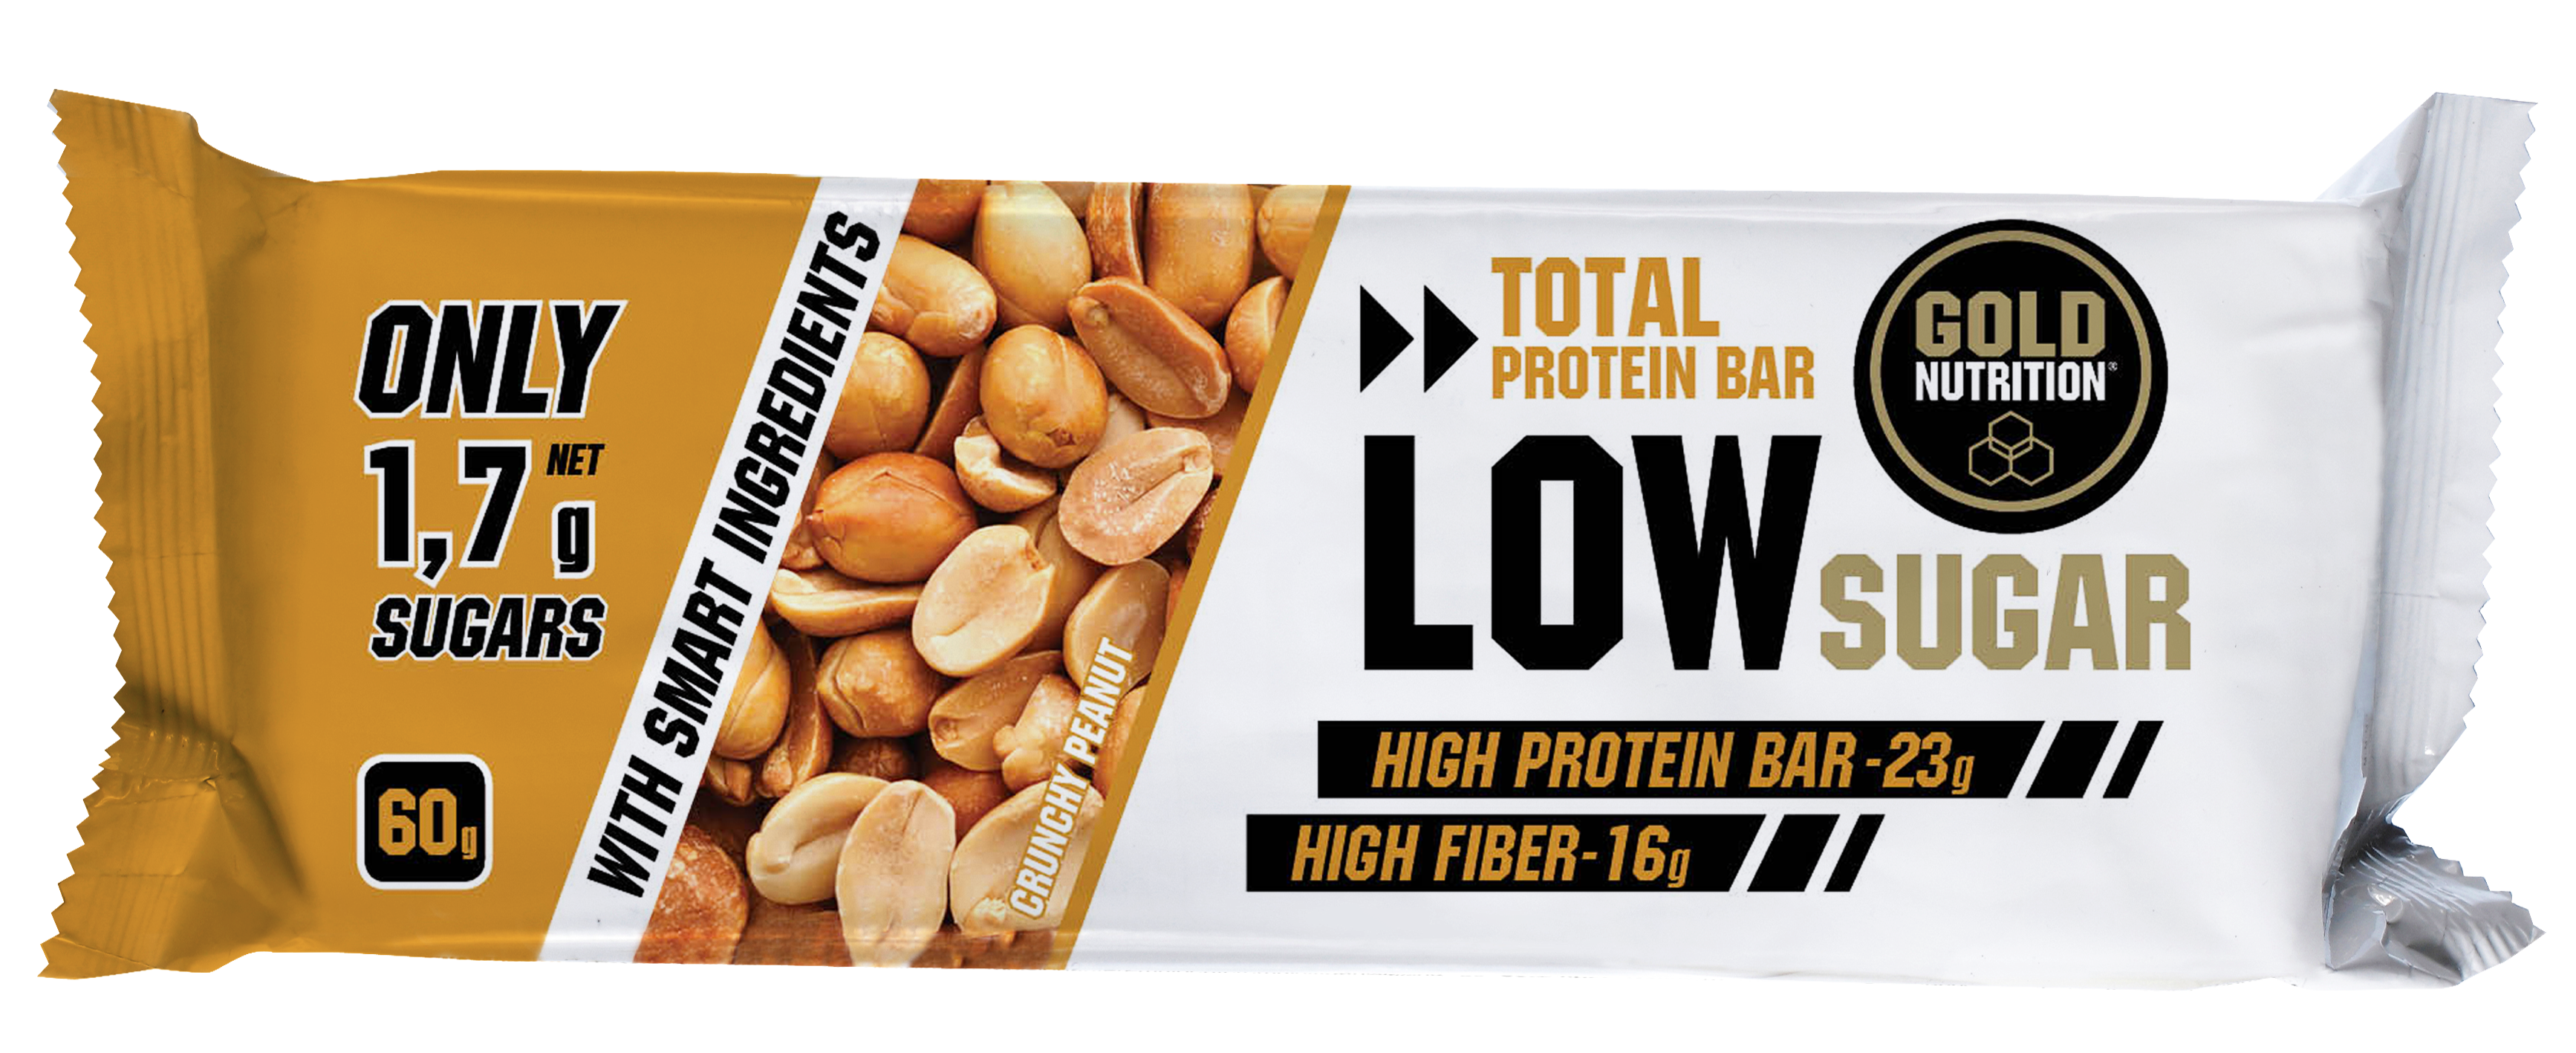 Total Protein Bar Low Sugar MHD 01.04.2020 Crunchy Peanut